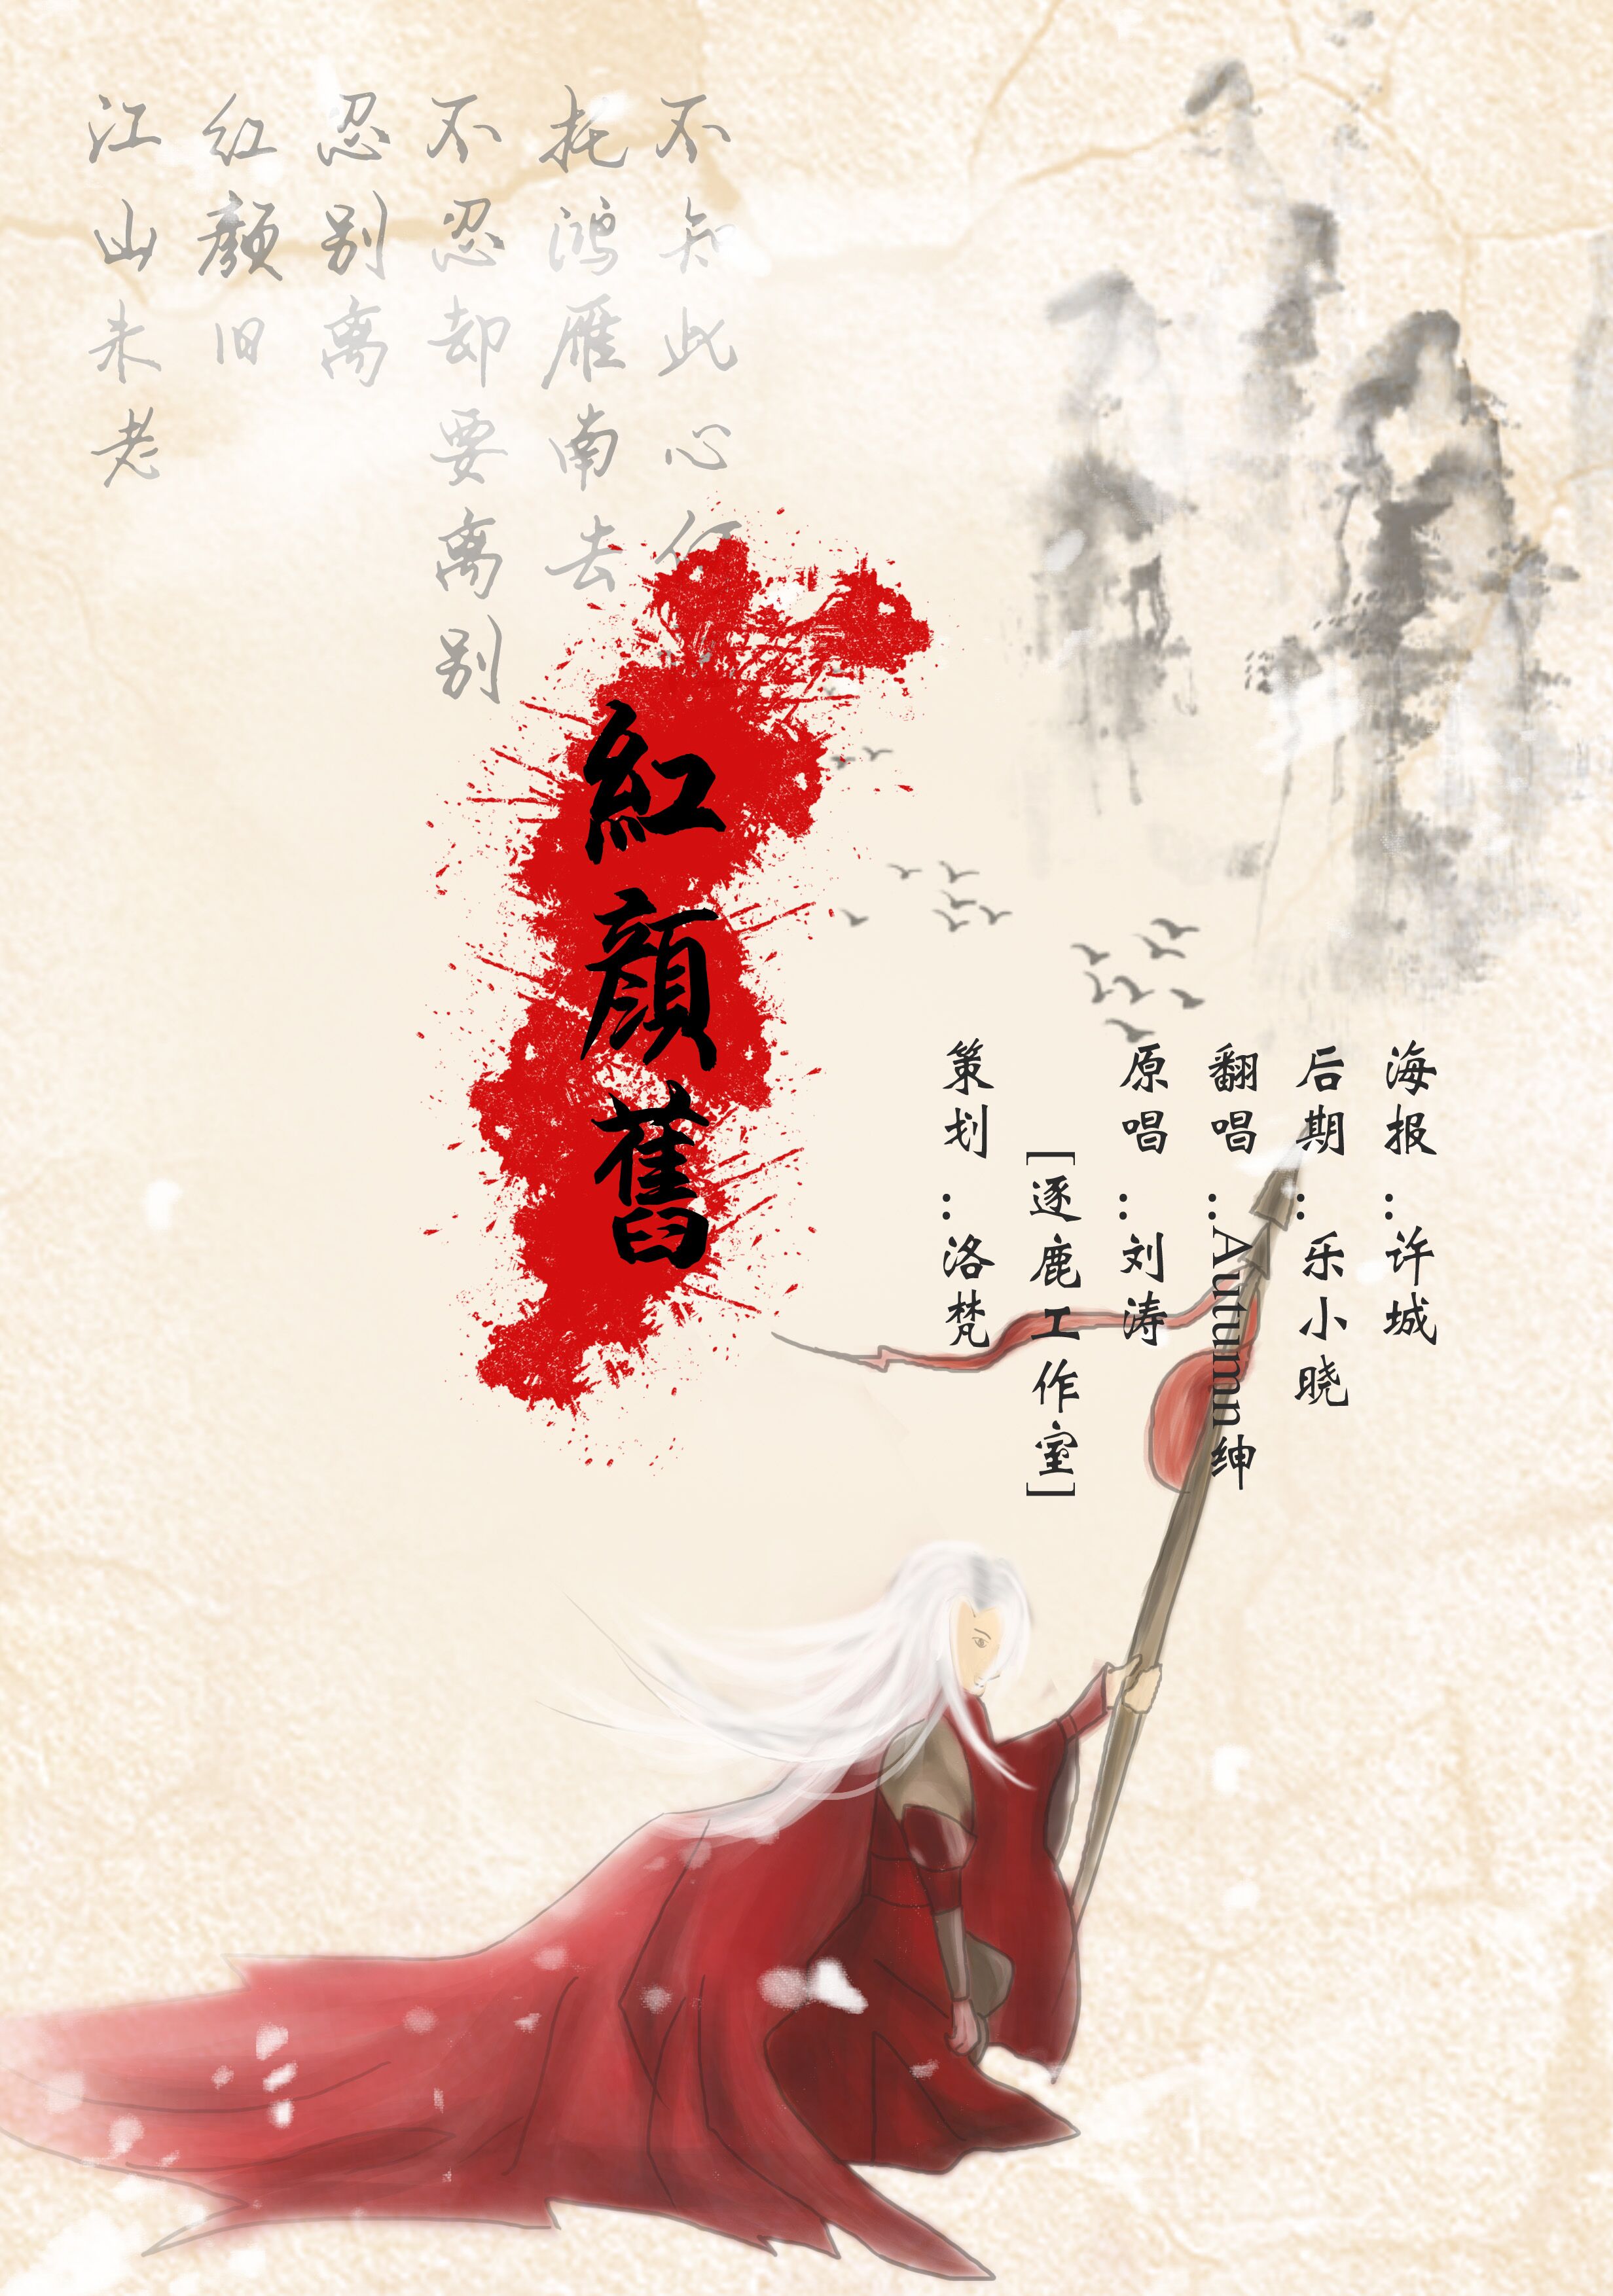 《红颜旧》 - autumn绅丶 - 5sing中国原创音乐基地